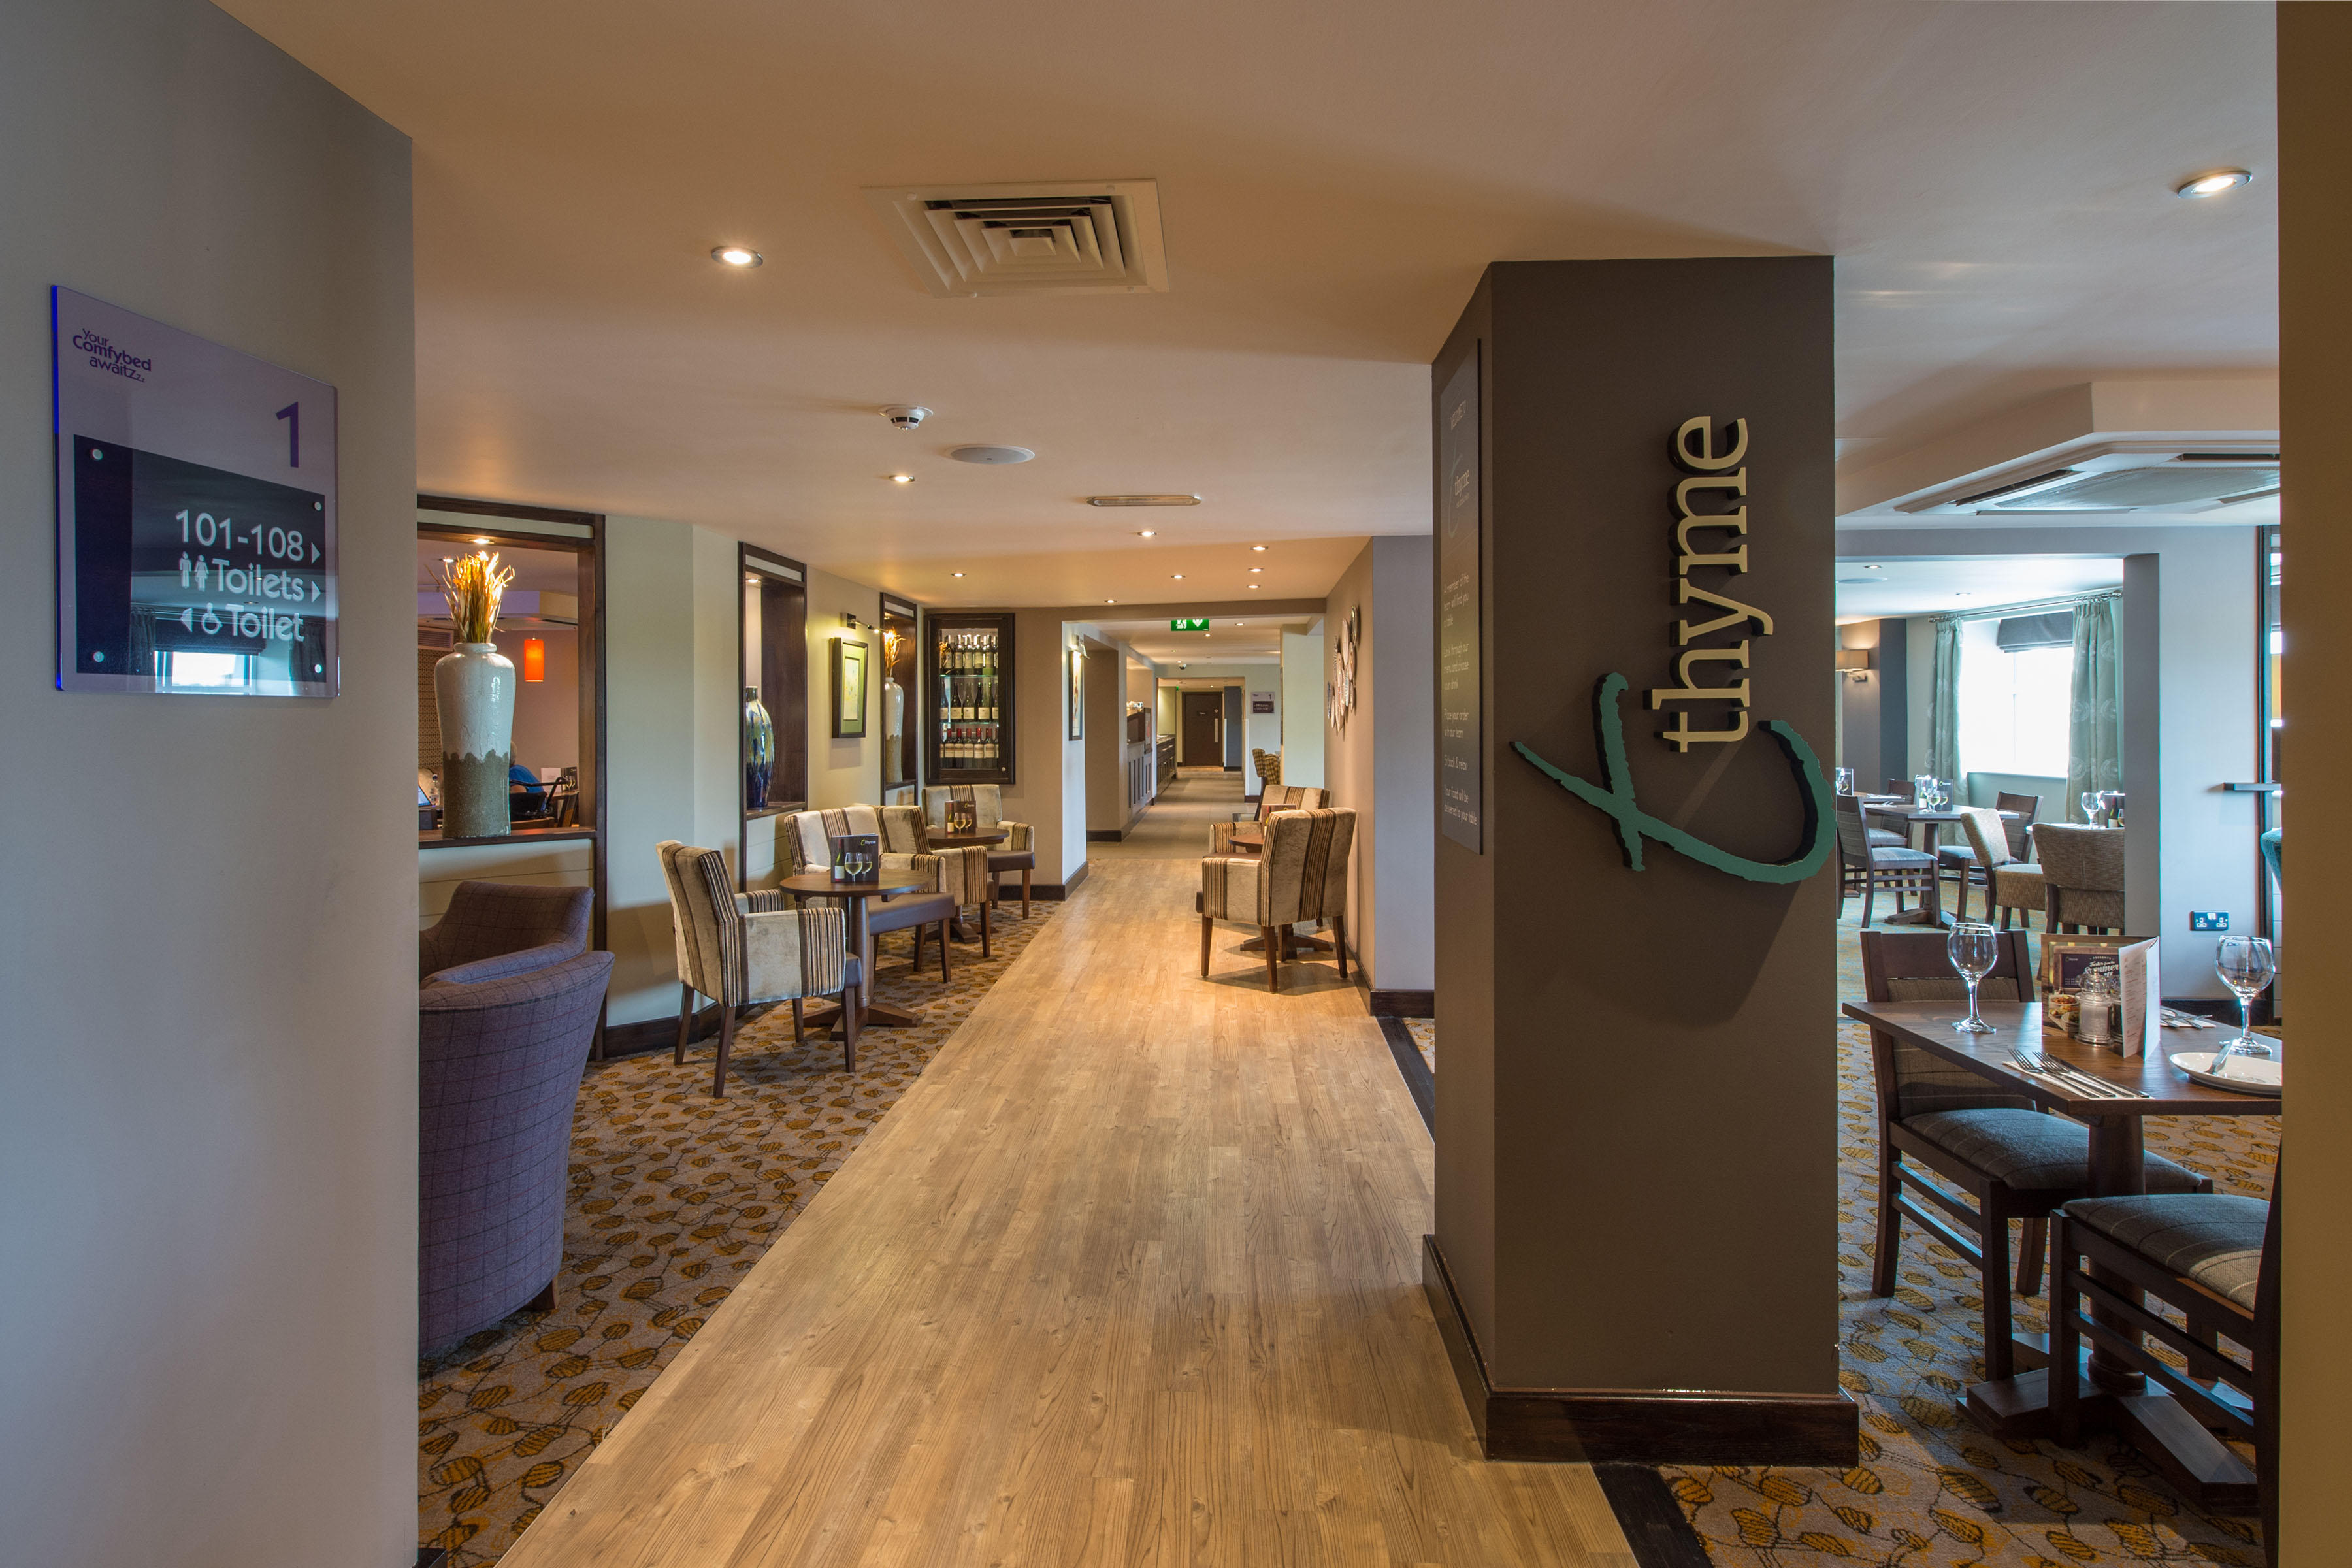 Thyme restaurant Premier Inn London Kingston Upon Thames hotel Kingston Upon Thames 03330 033403